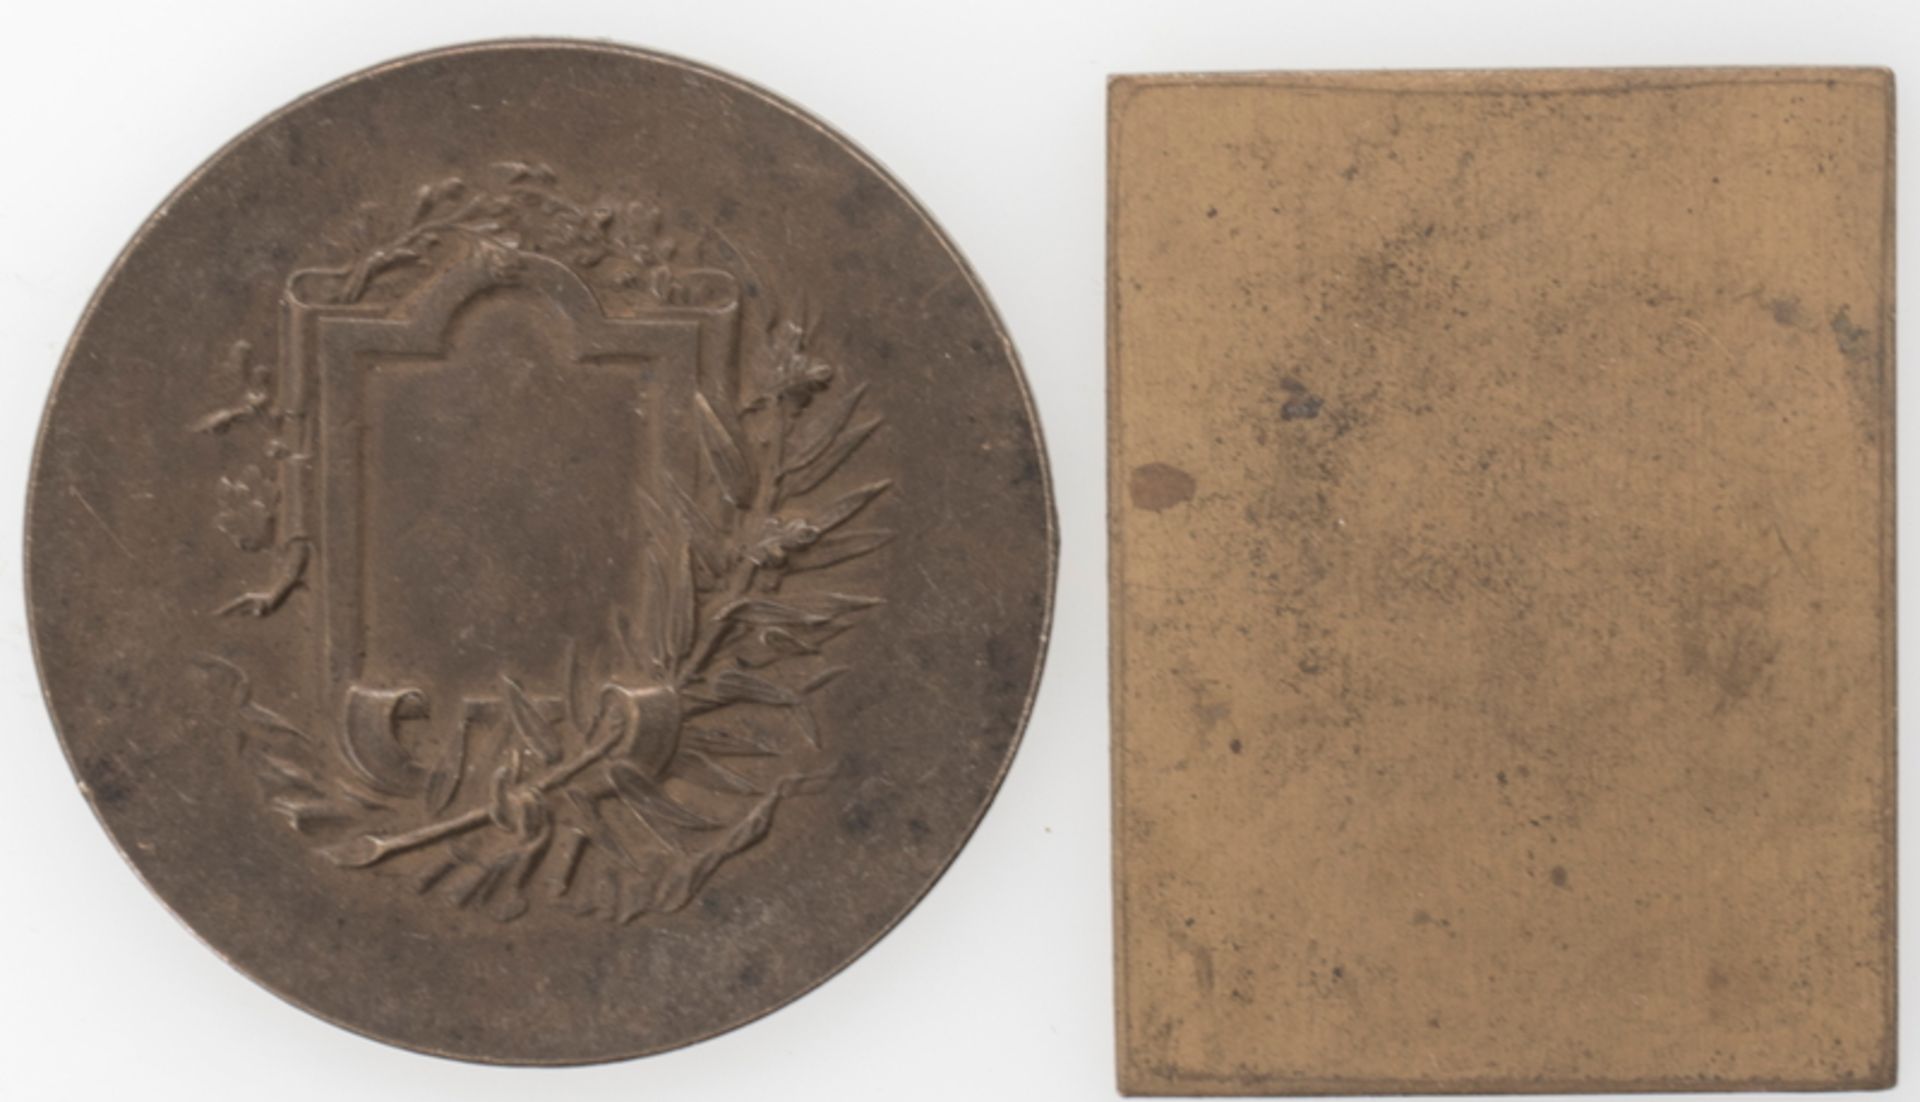 Zwei Medaillen / Plakette, Schiller und Tolstoi. Durchmesser: ca. 50 mm und ca. 50 mm x ca. 39 mm. - Bild 2 aus 2